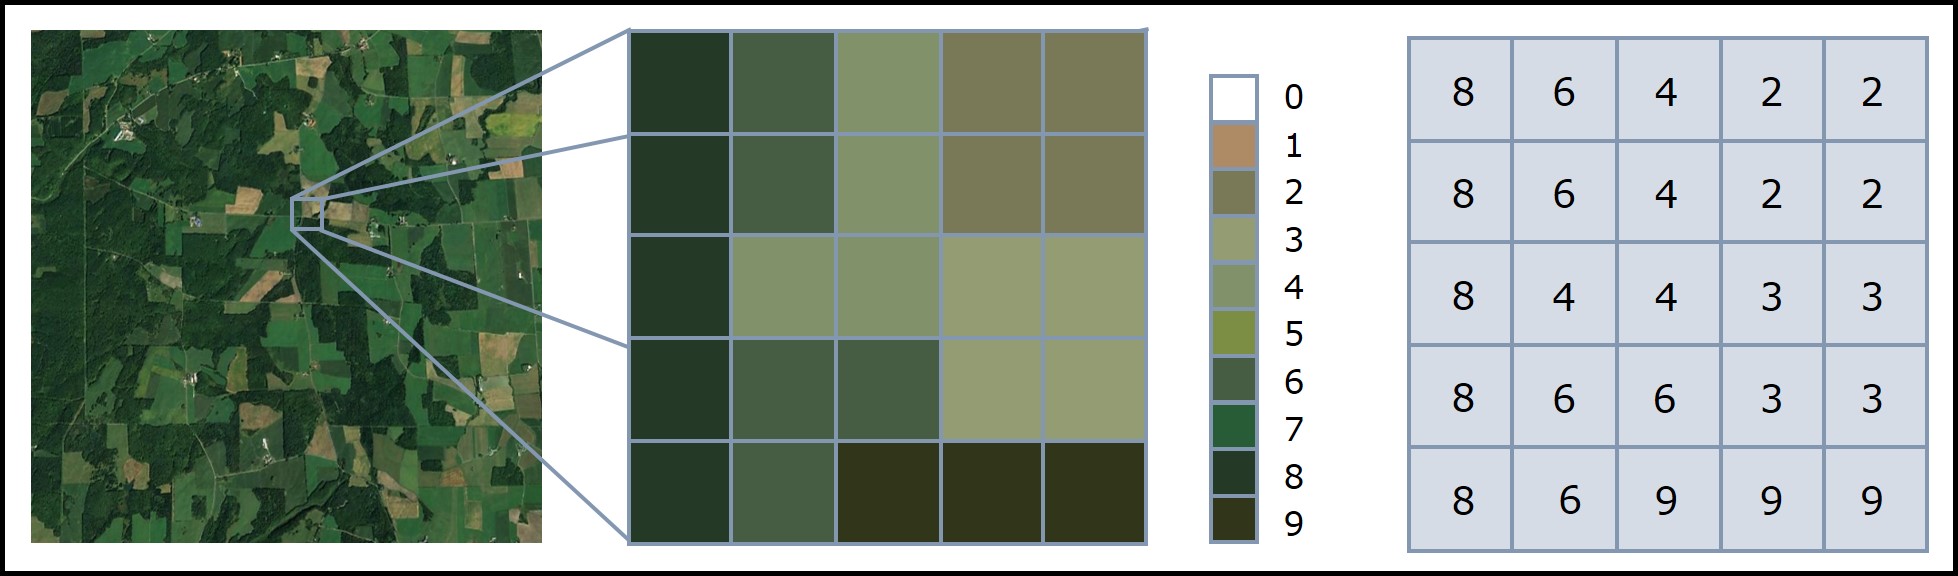 Exemple de données matricielles associées à des classes de végétation obtenues à partir d’une image satellitaire. Figure inspirée de NEON neonscience.org/resources/series/introduction-working-raster-data-r